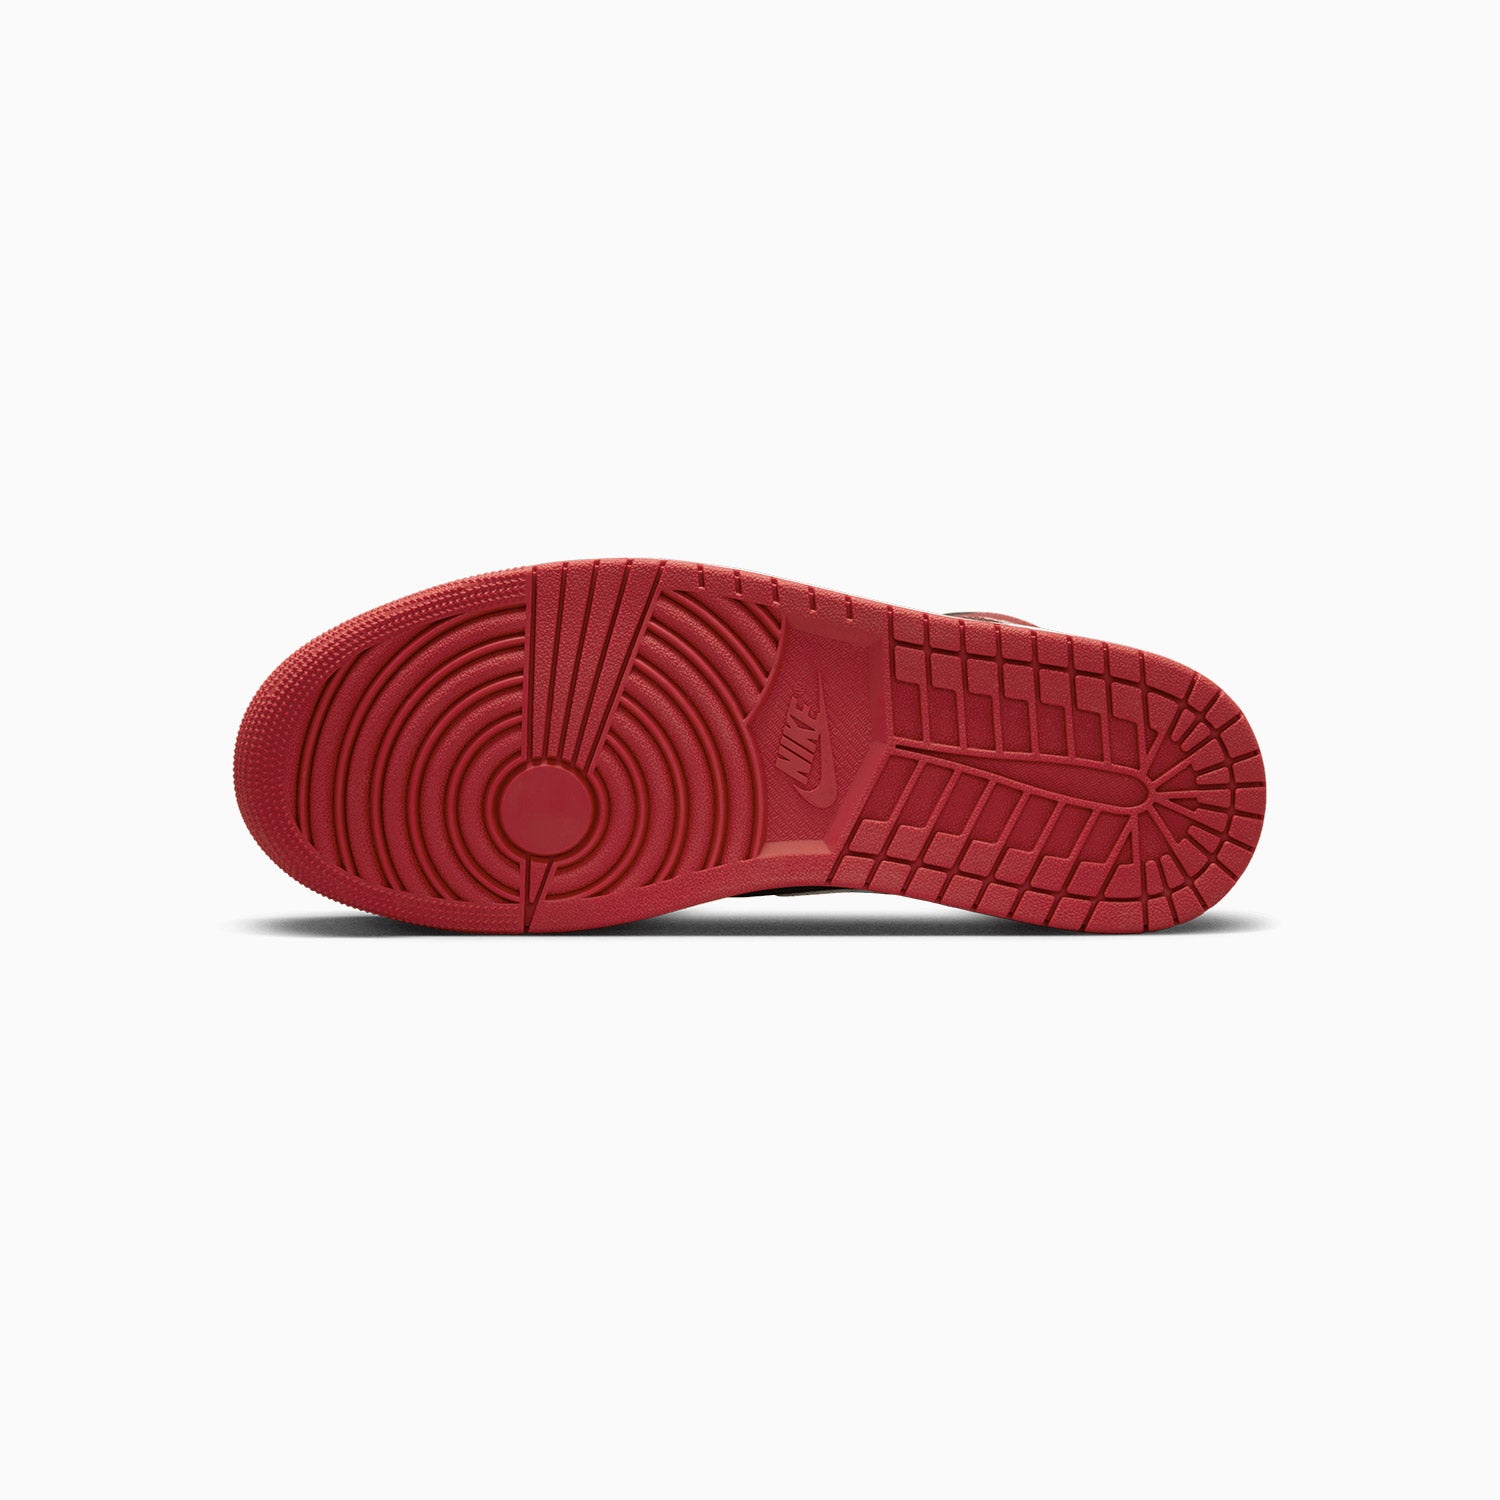 mens-air-jordan-1-mid-shoes-dq8426-061